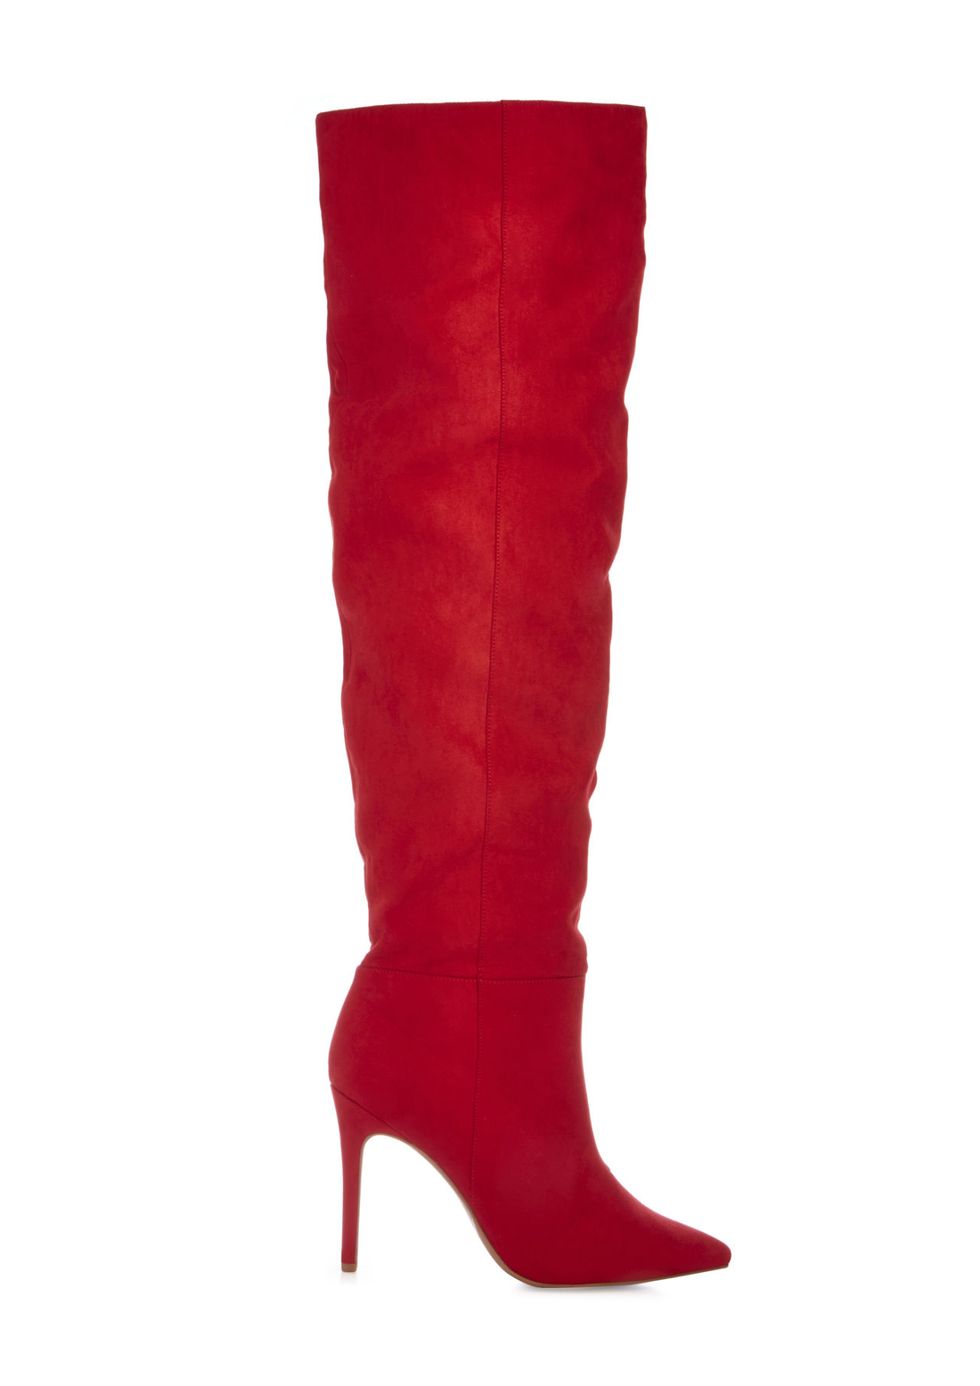 Gli stivali alti rossi sono il tuo prossimo paio di stivali sopra il ginocchio del desiderio: avvistati sulle passerelle delle quattro capitali della moda, sono praticamente irresistibili.